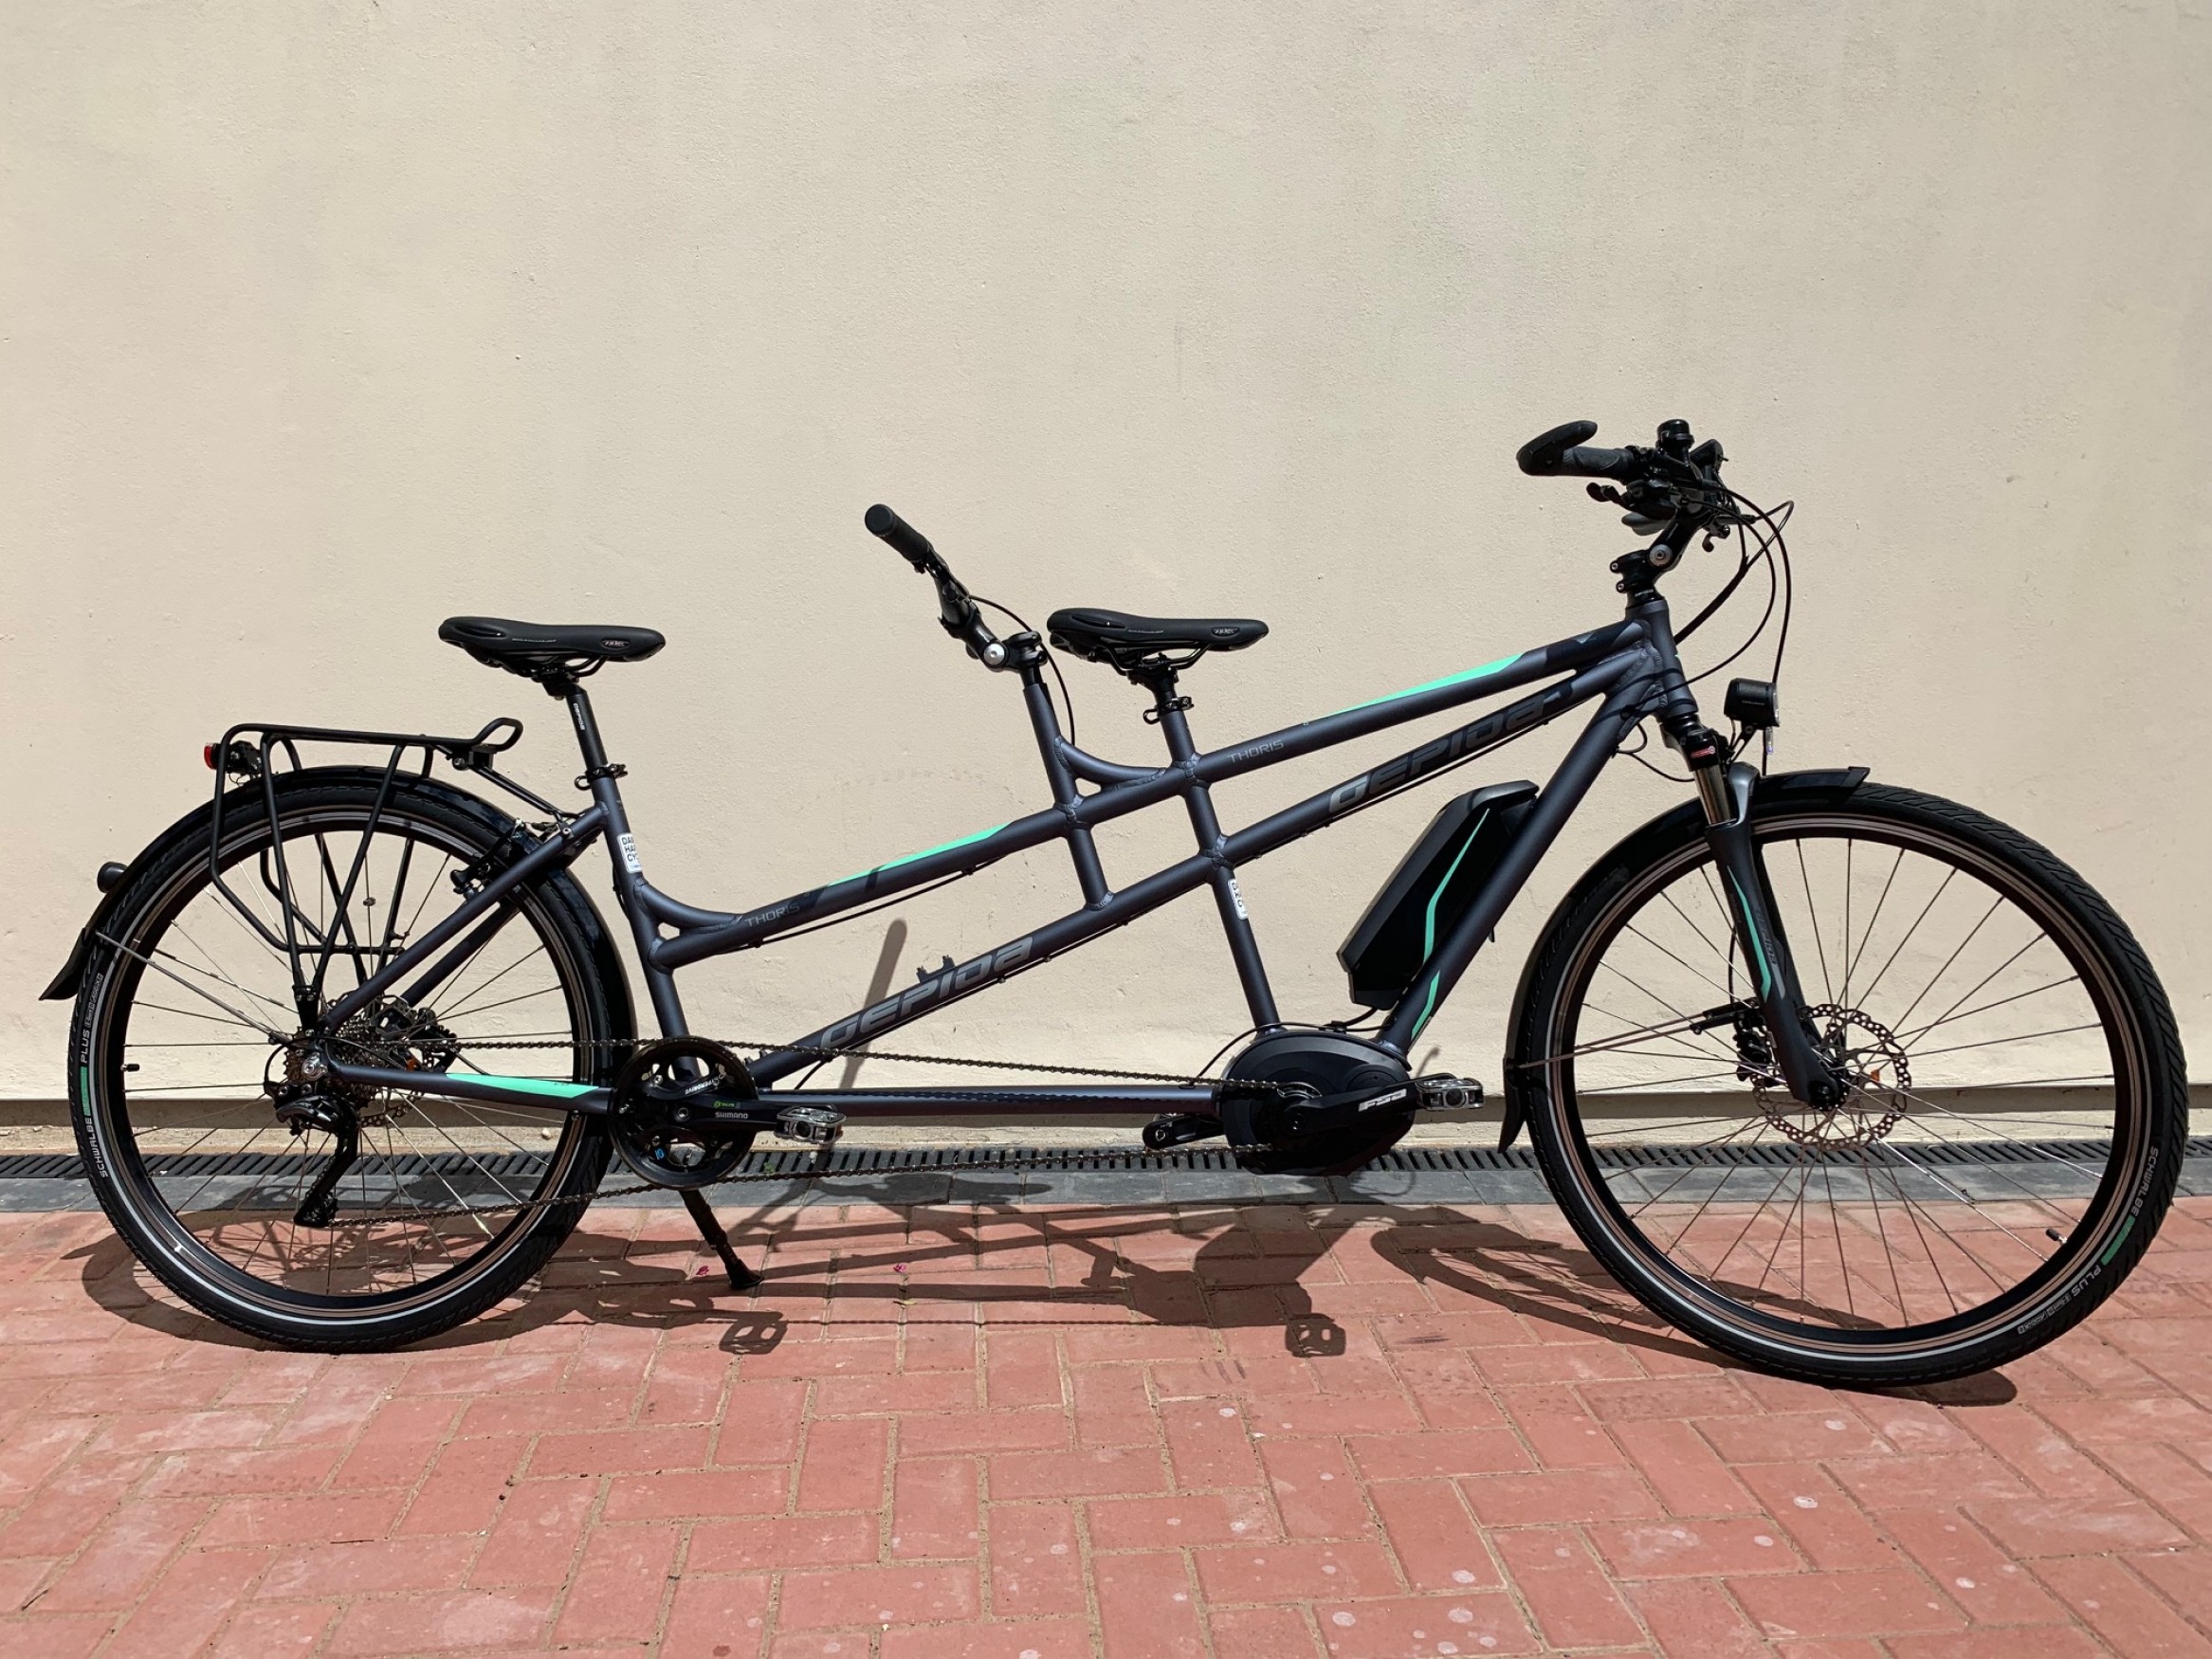 uitstulping aftrekken Sluit een verzekering af Gepida Thoris Tandem - Bosch 2019 Electric Bike | Damian Harris Cycles |  E-bike specialist, Cardiff UK